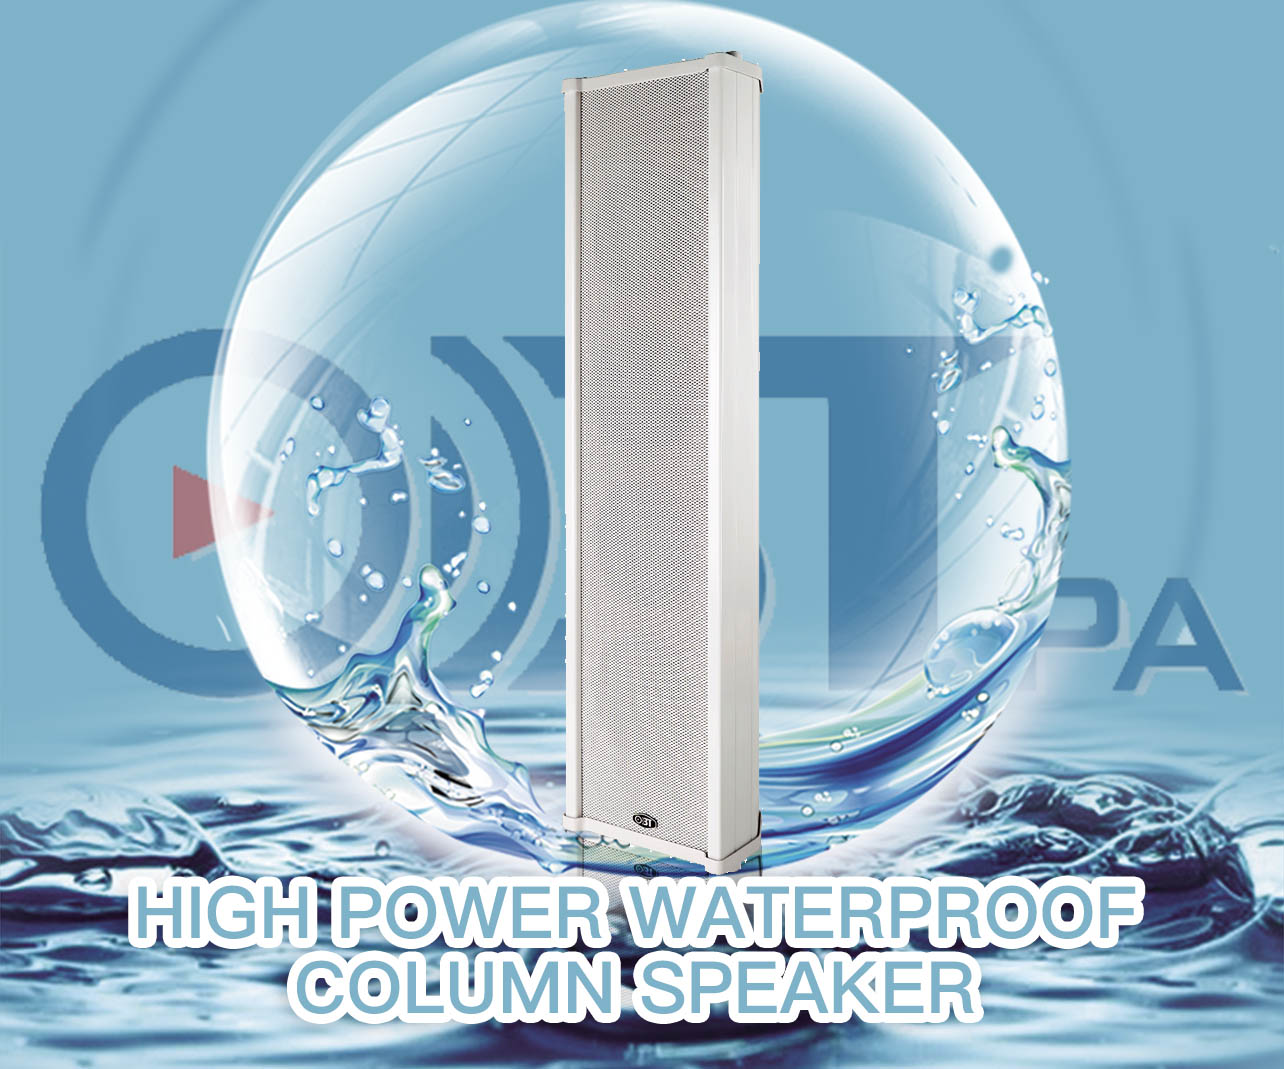 High power waterproof column speaker